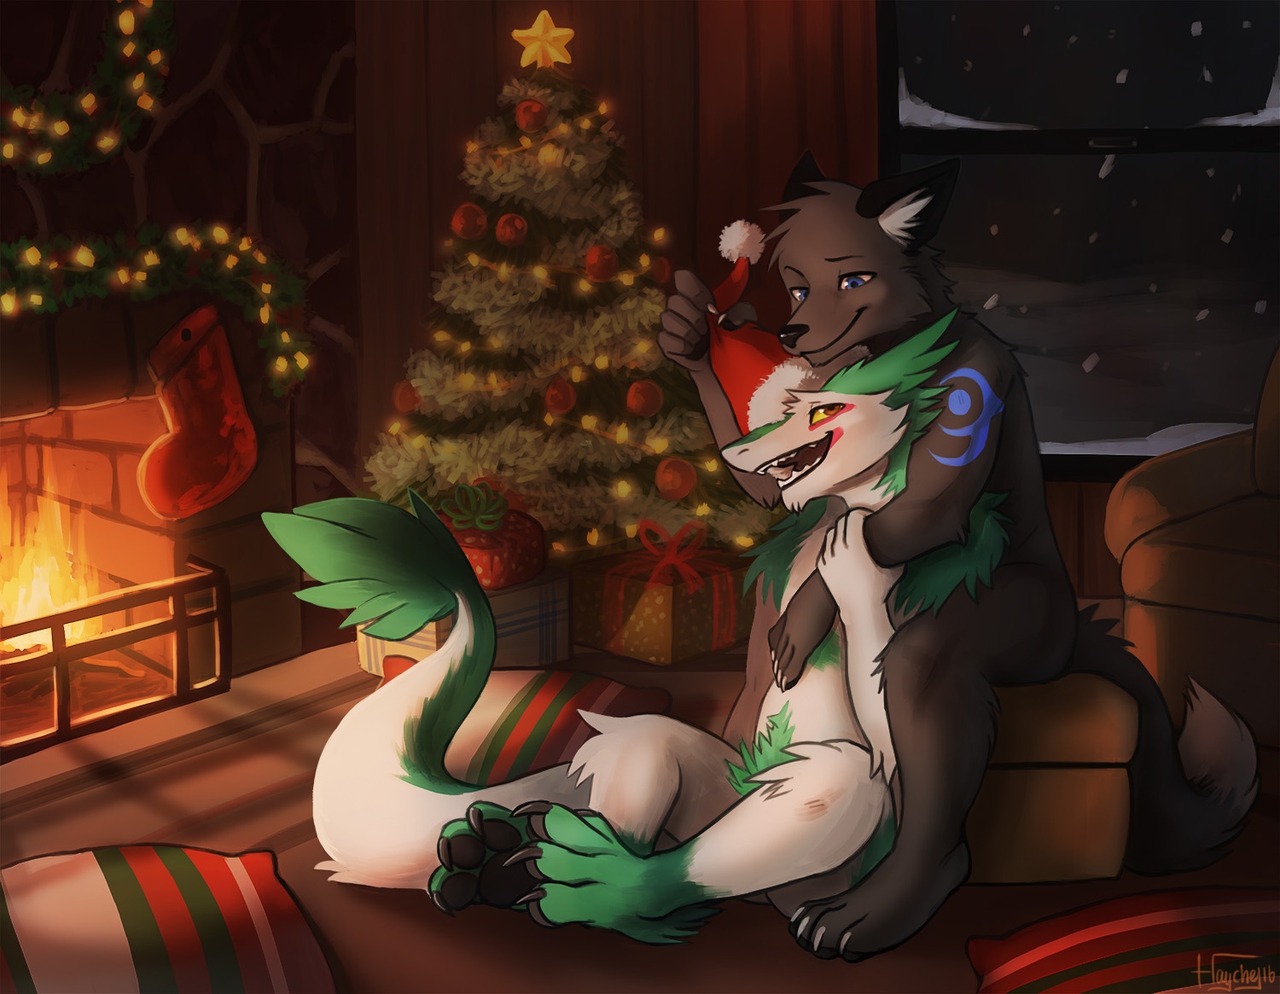 A very cozy Christmas